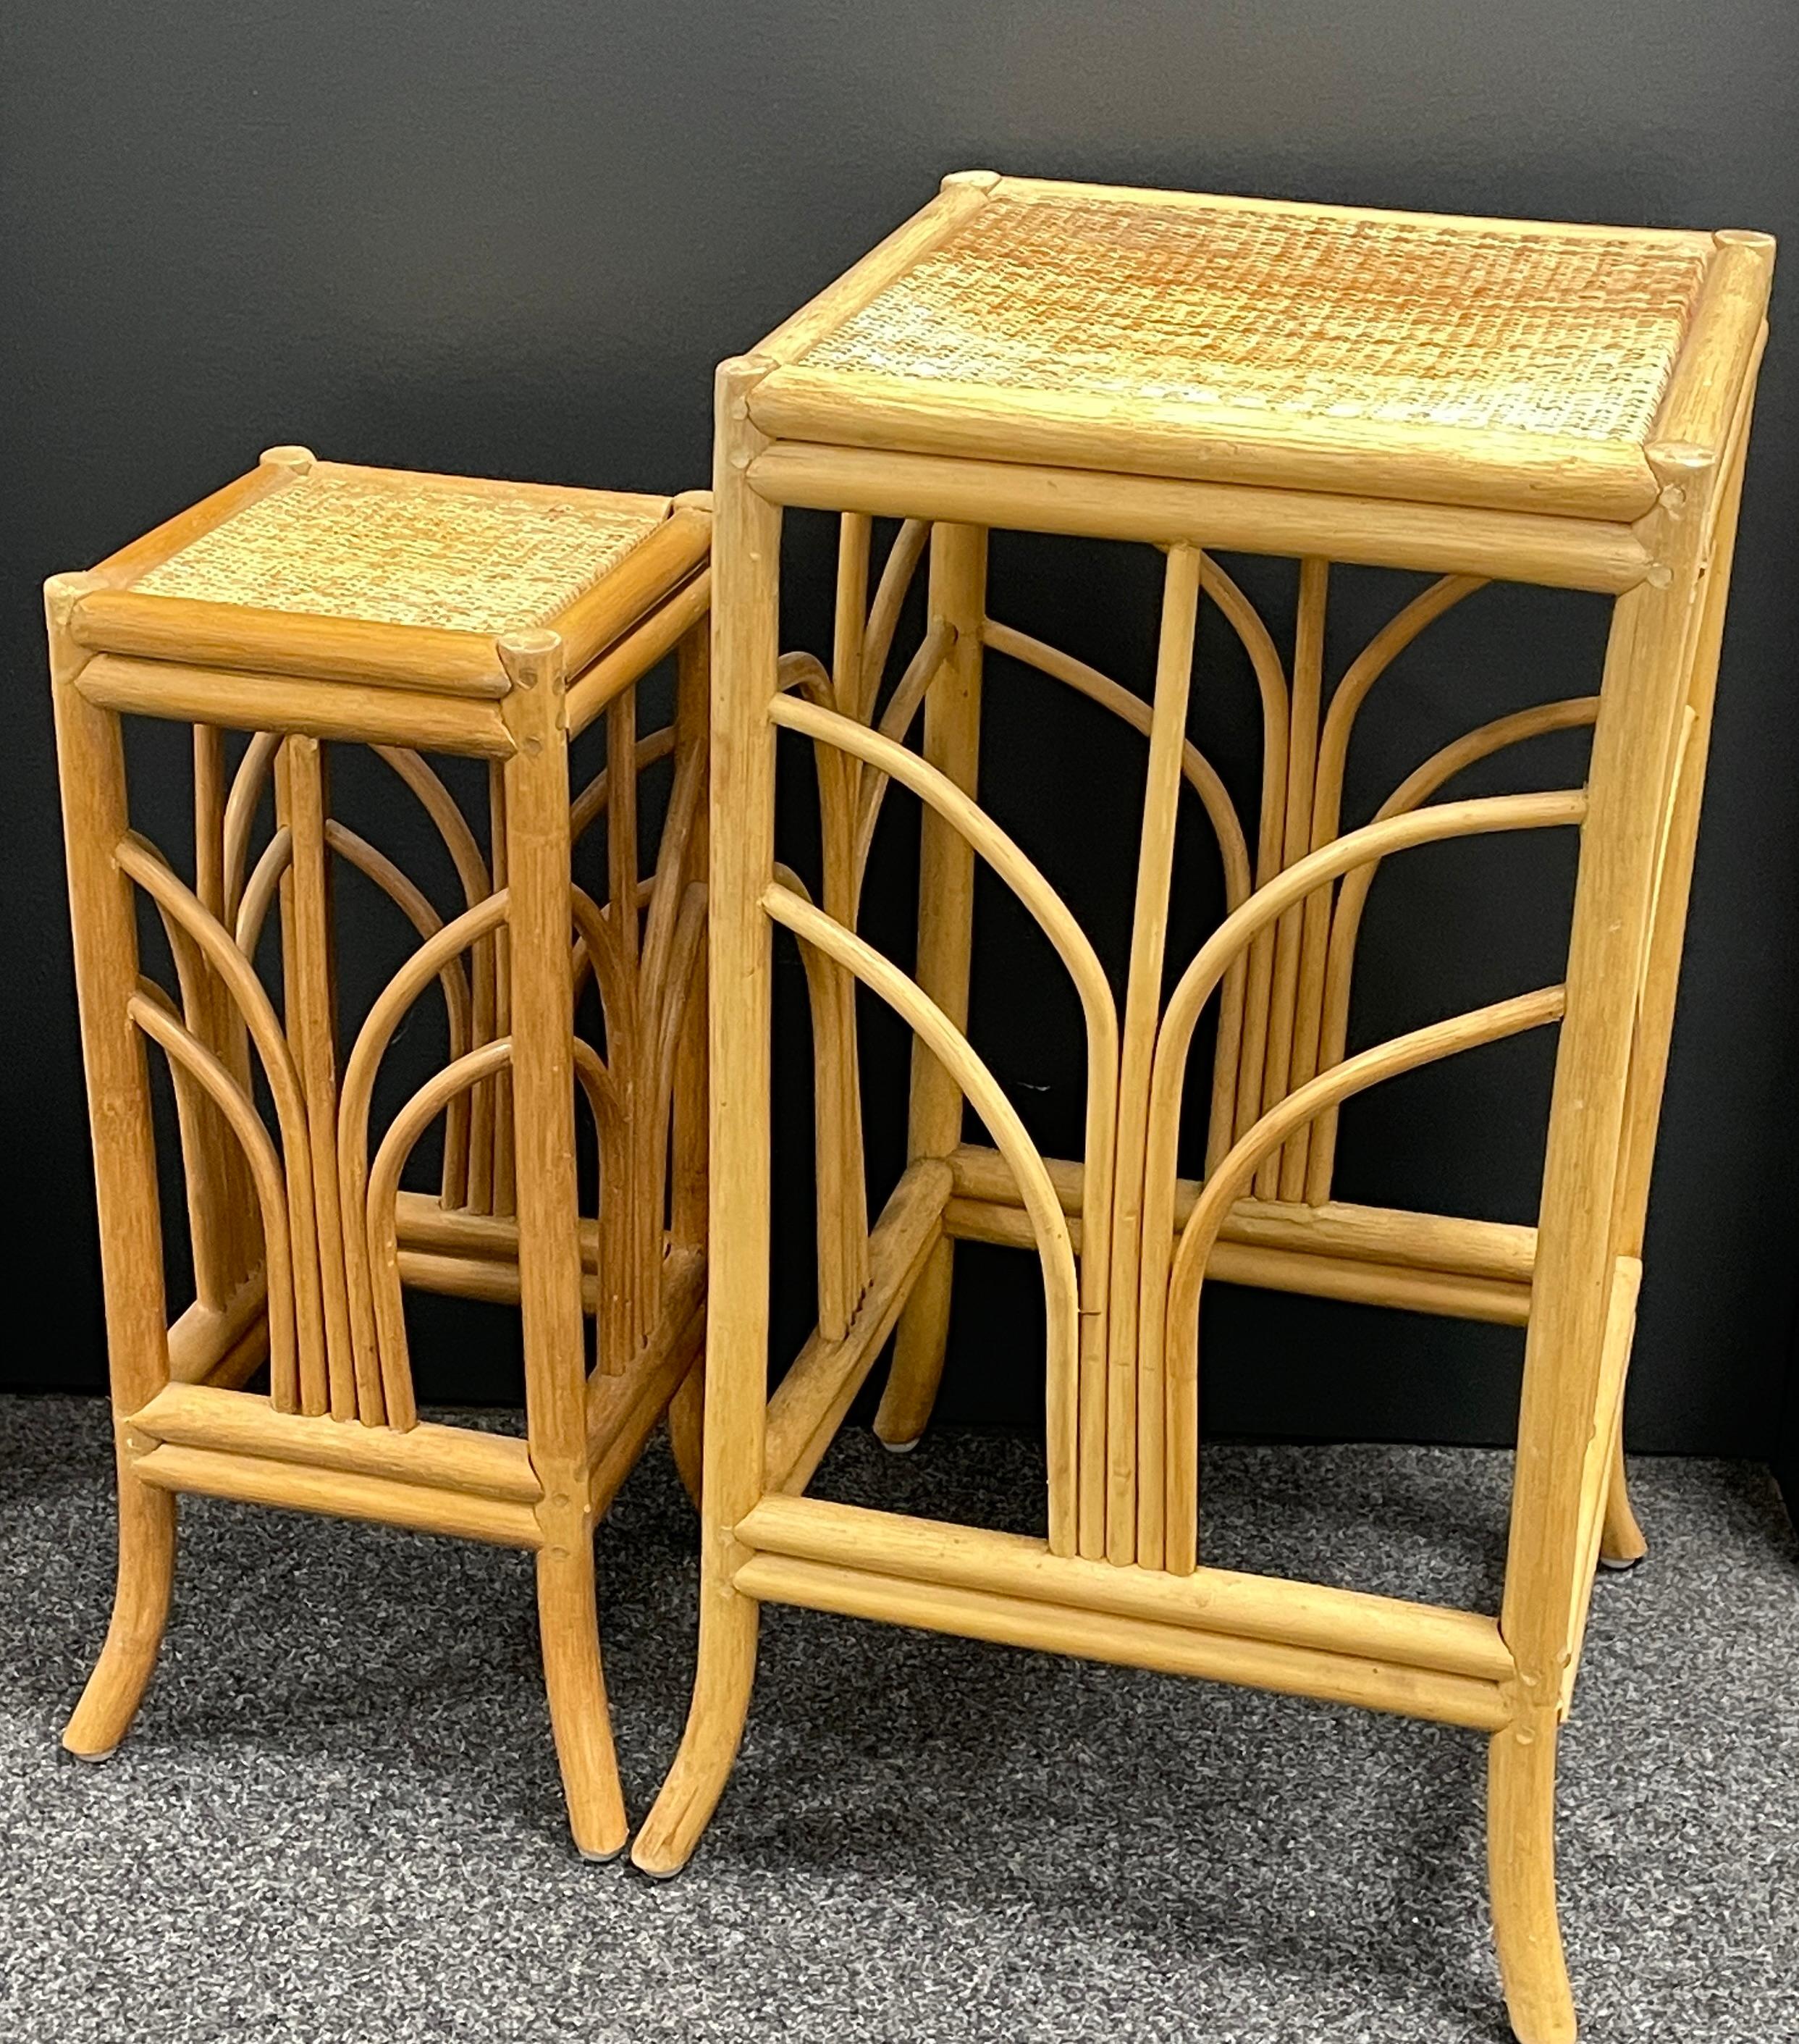 Schönes Set aus zwei böhmischen Bambuspflanzgefäßen oder Schachteltischen im Vintage-Stil. Die Gruppe besteht aus zwei abgestuften Pflanzgefäßen von abgestufter Größe. Die trendigen Boho-Ständer sind aus Rattan/Bambus gefertigt. Es handelt sich um